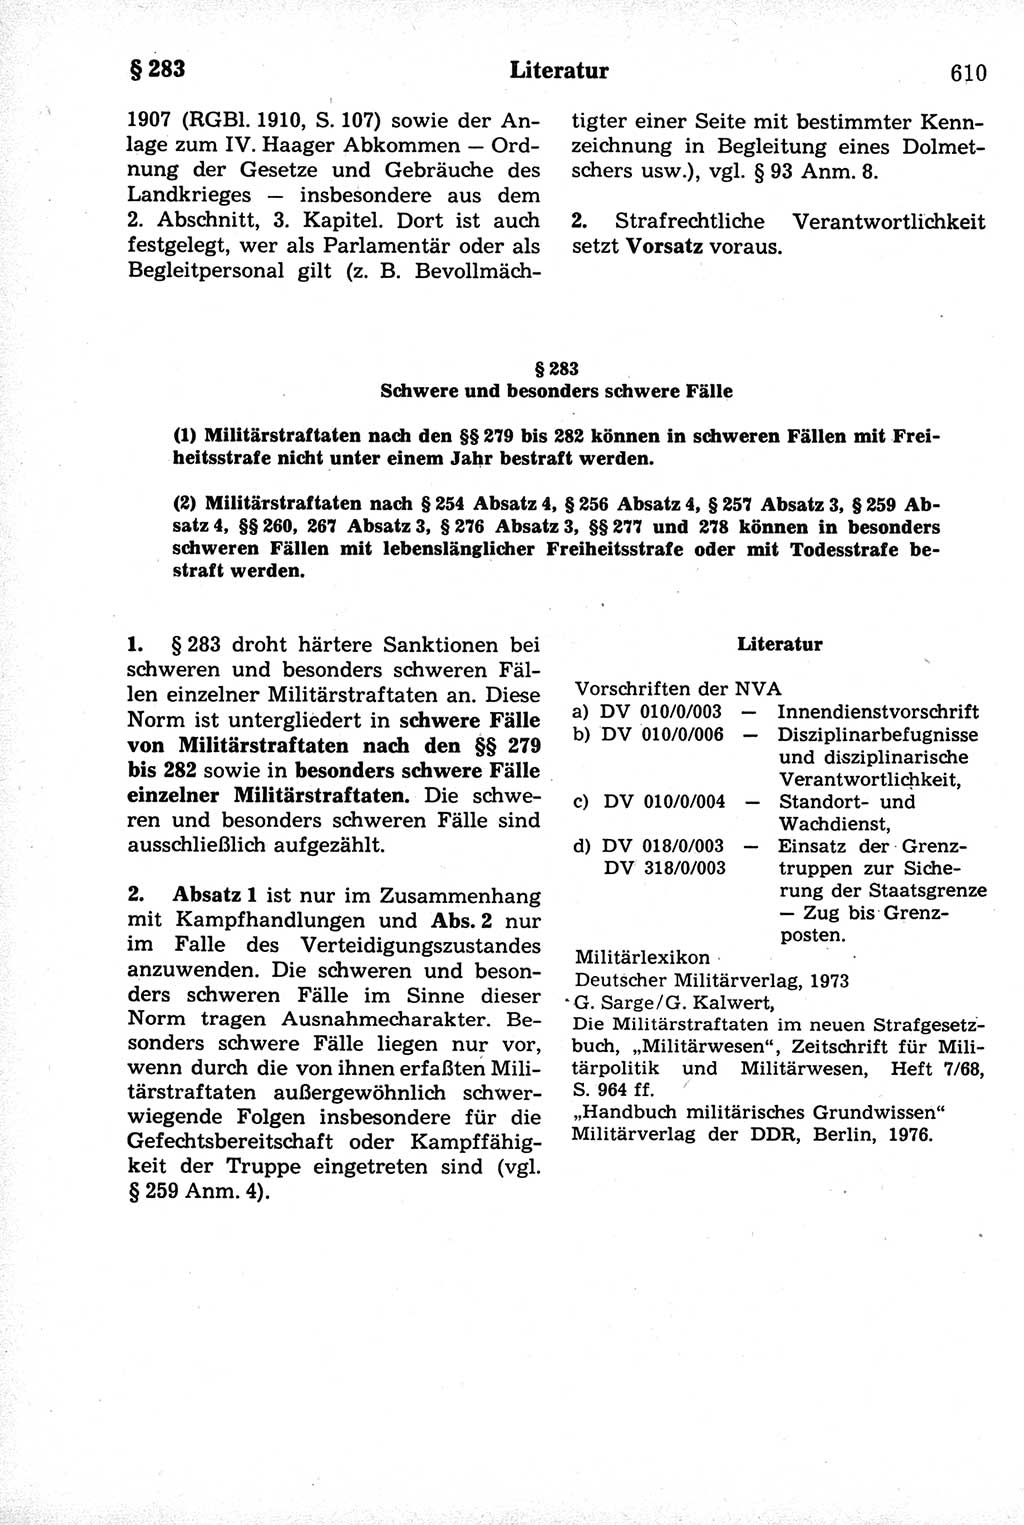 Strafrecht der Deutschen Demokratischen Republik (DDR), Kommentar zum Strafgesetzbuch (StGB) 1981, Seite 610 (Strafr. DDR Komm. StGB 1981, S. 610)